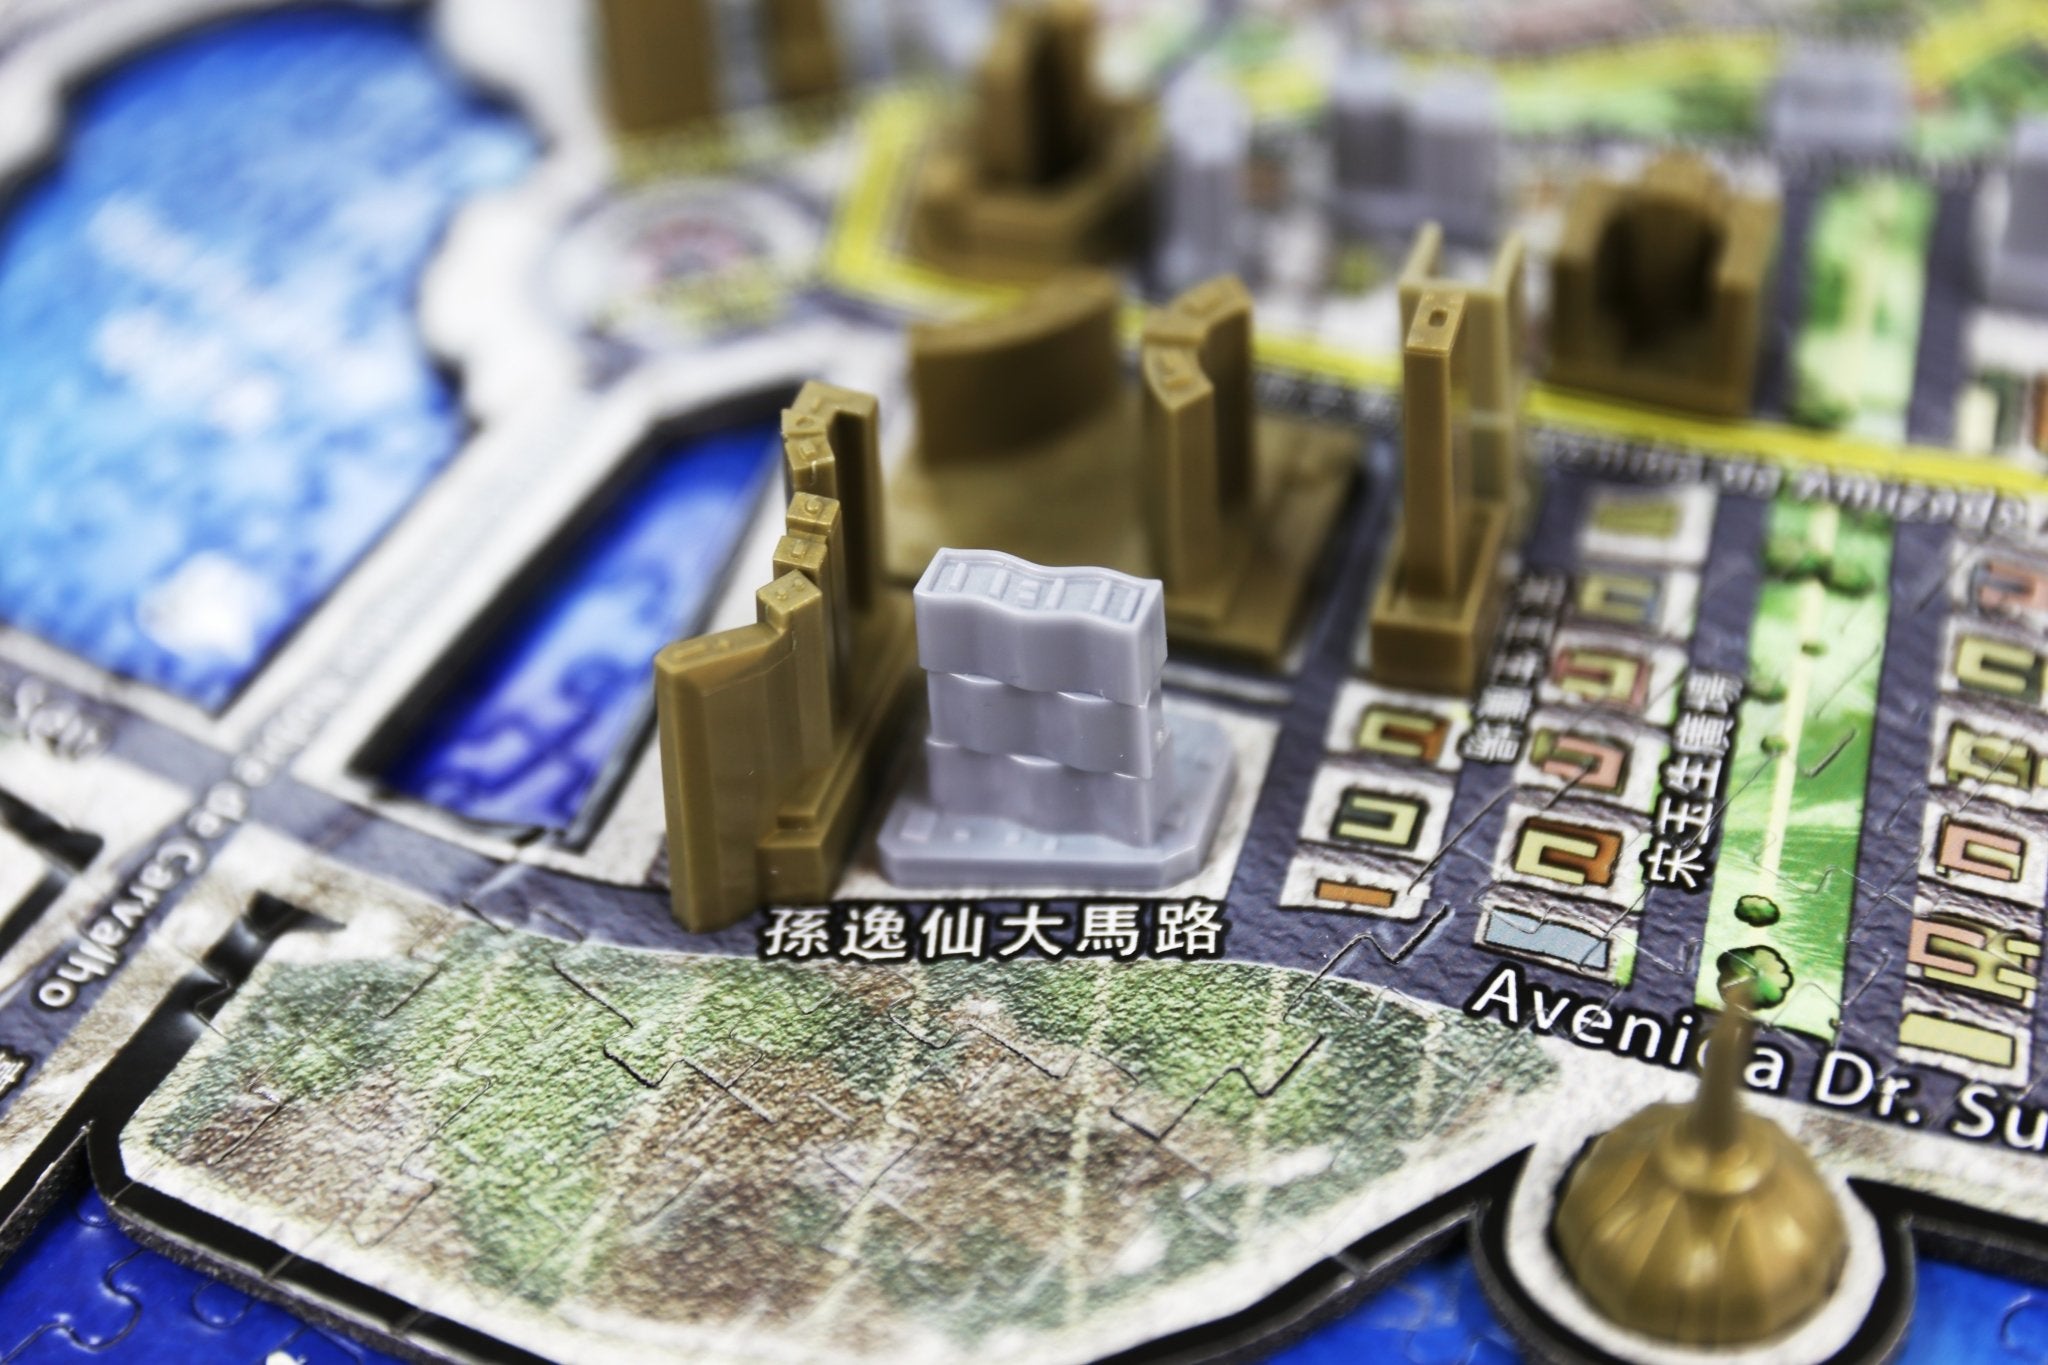 4D Cityscape Macau Time Puzzle - 4DPuzz - 4DPuzz
